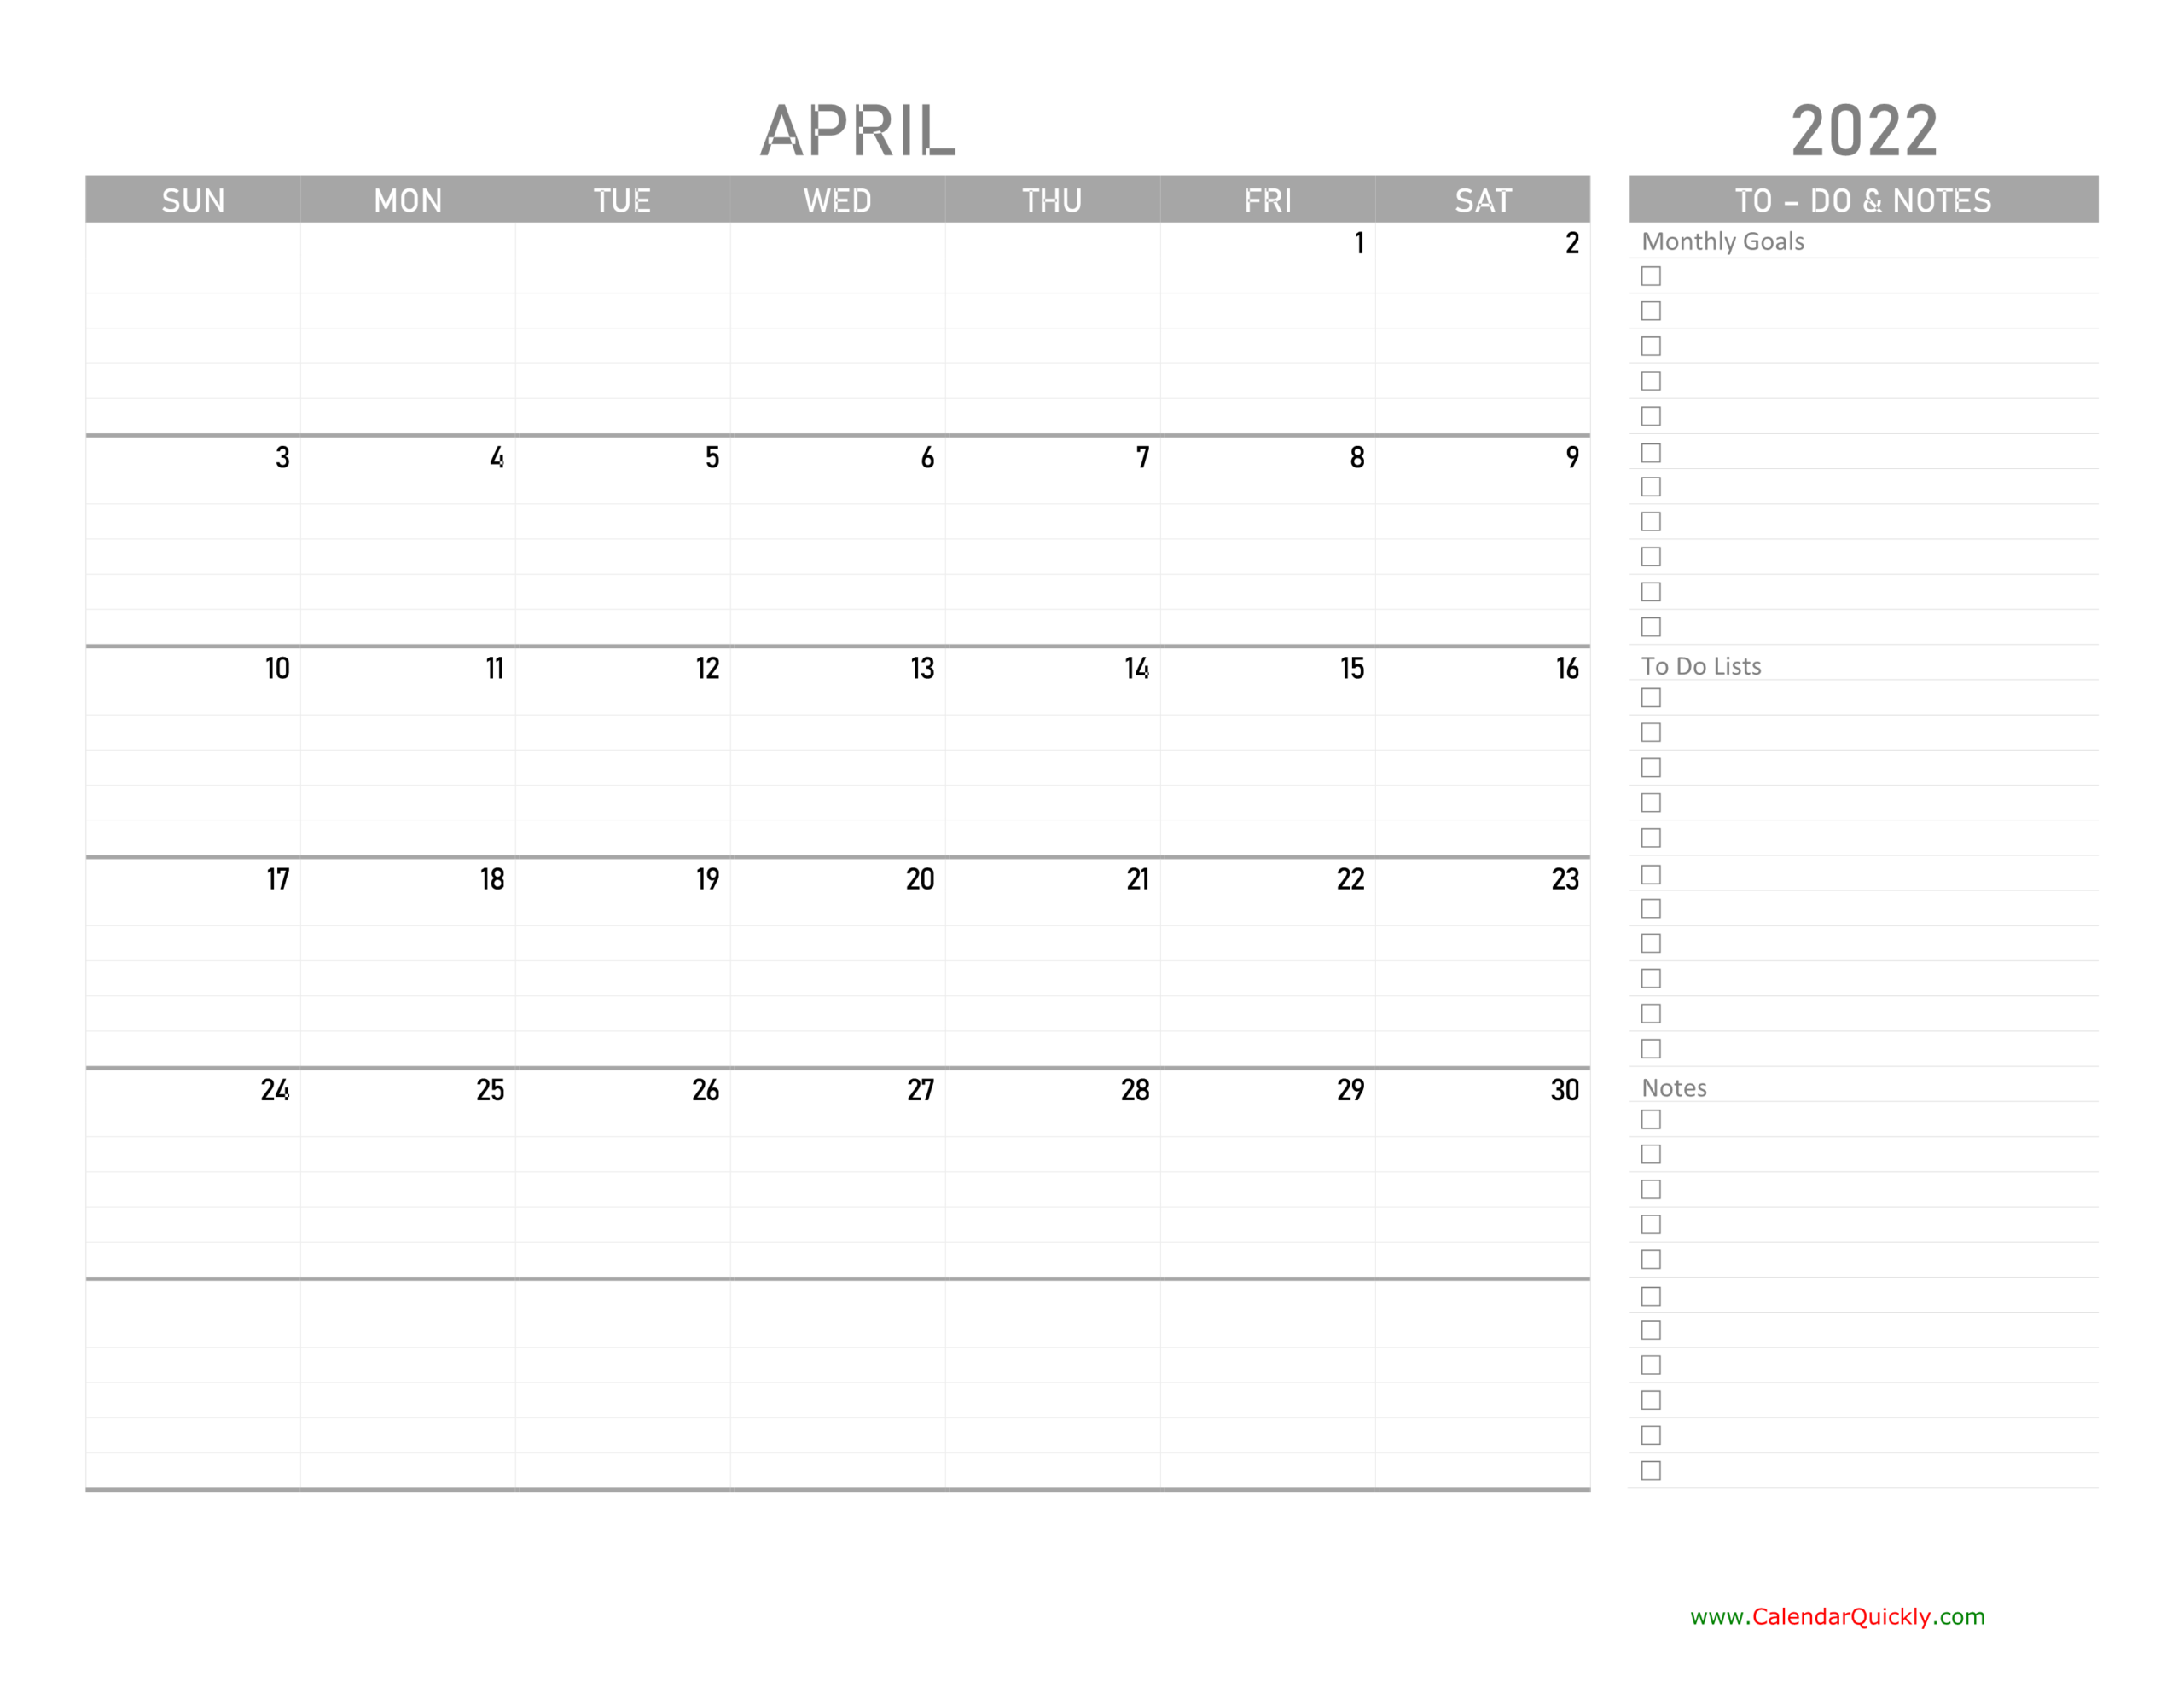 April 2022 Calendar With To-Do List | Calendar Quickly